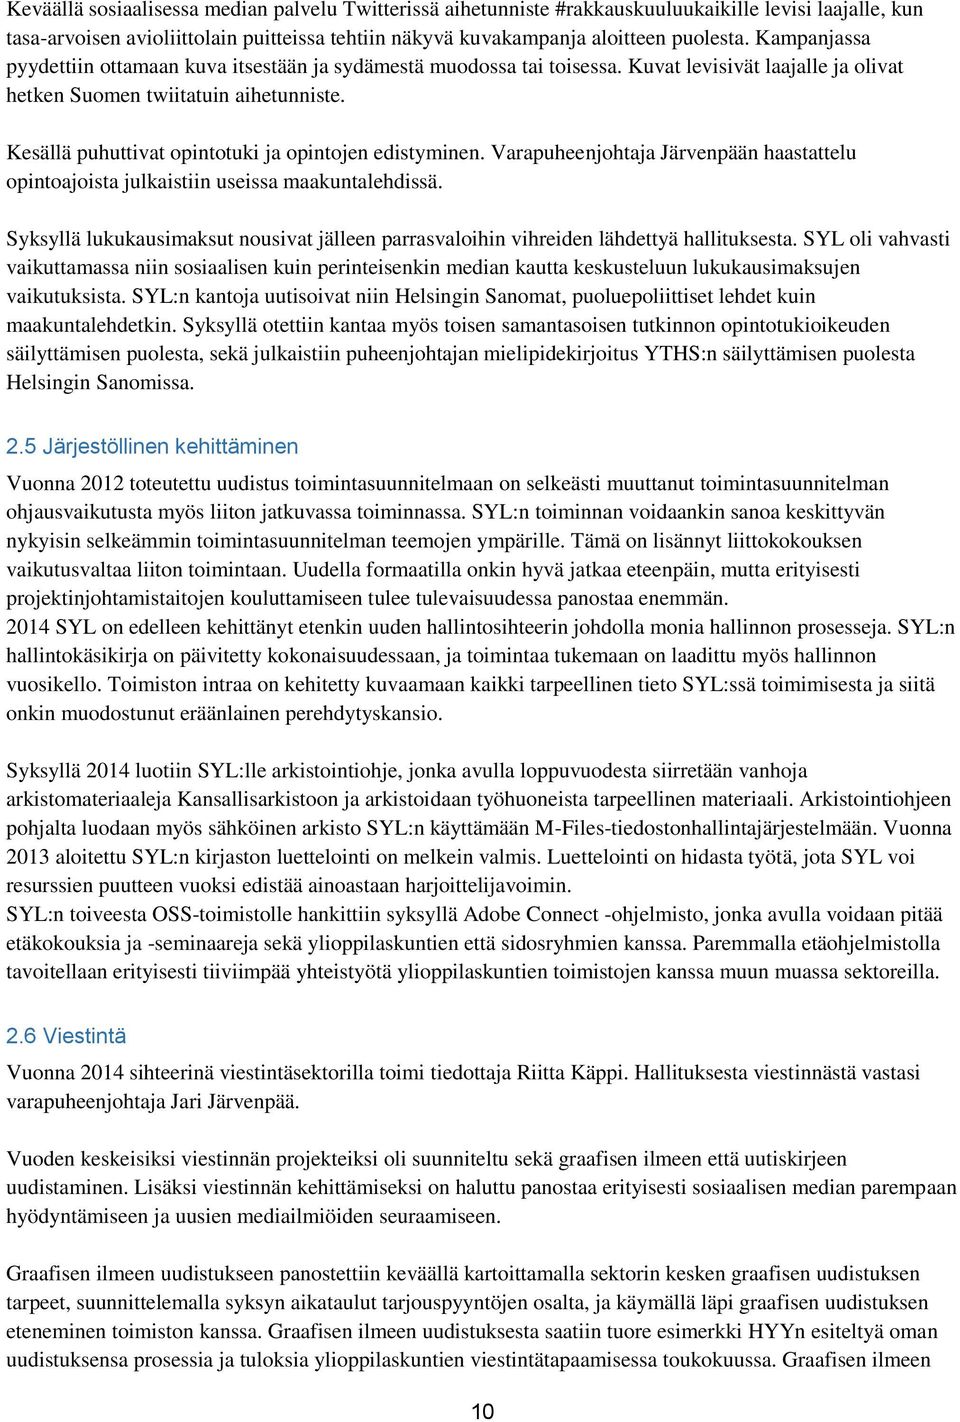 Kesällä puhuttivat opintotuki ja opintojen edistyminen. Varapuheenjohtaja Järvenpään haastattelu opintoajoista julkaistiin useissa maakuntalehdissä.